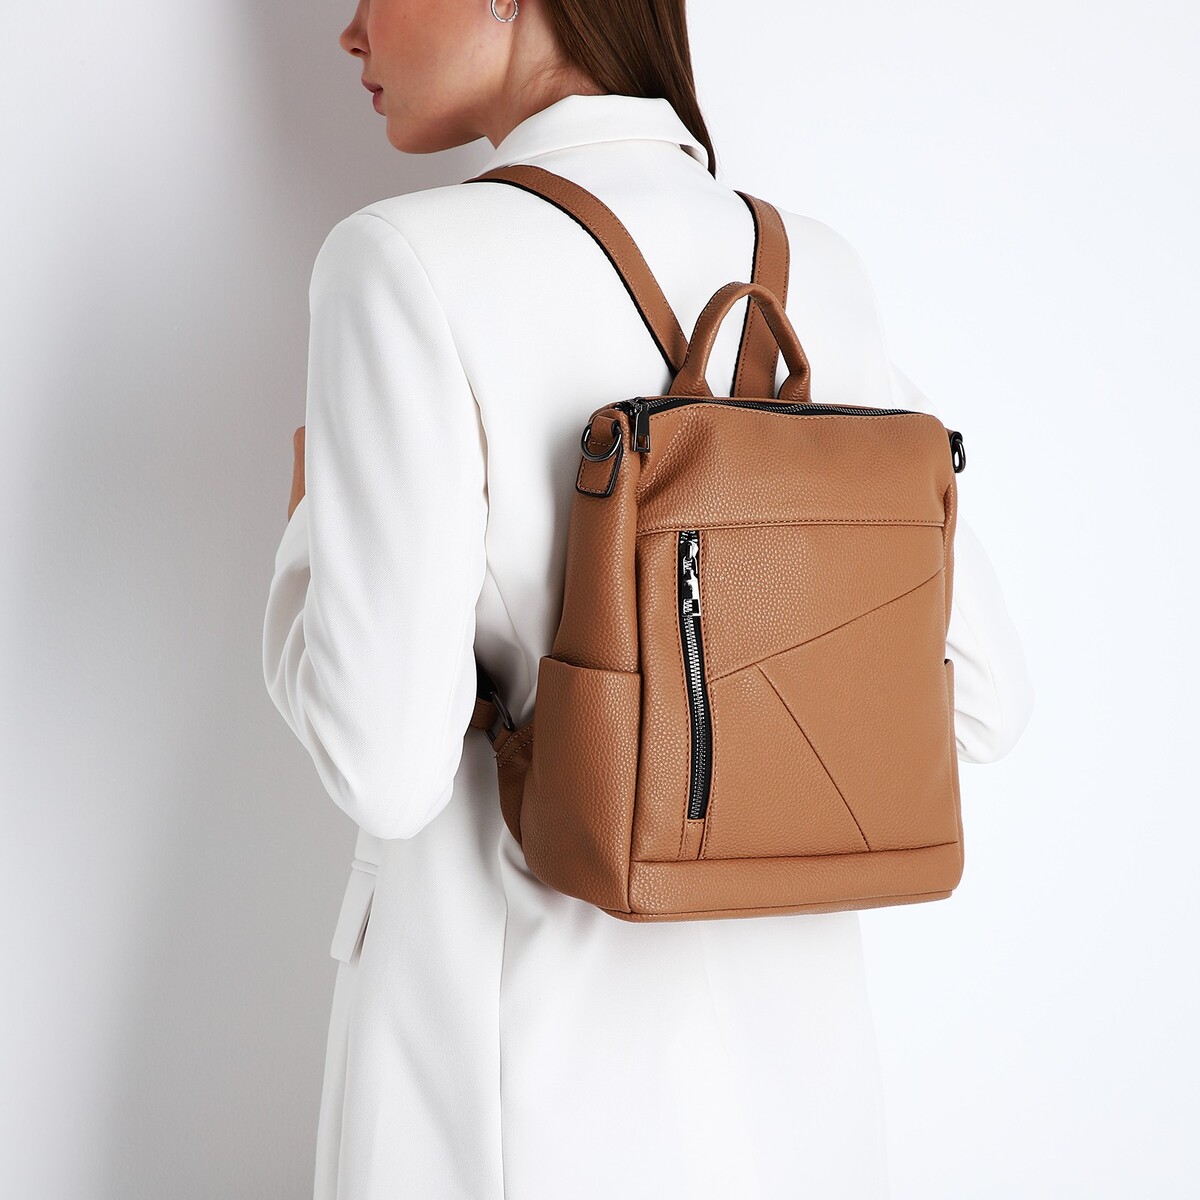 Рюкзак женский из искусственной кожи на молнии, 4 кармана, цвет коричневый рюкзак женский из искусственной кожи на молнии 3 кармана